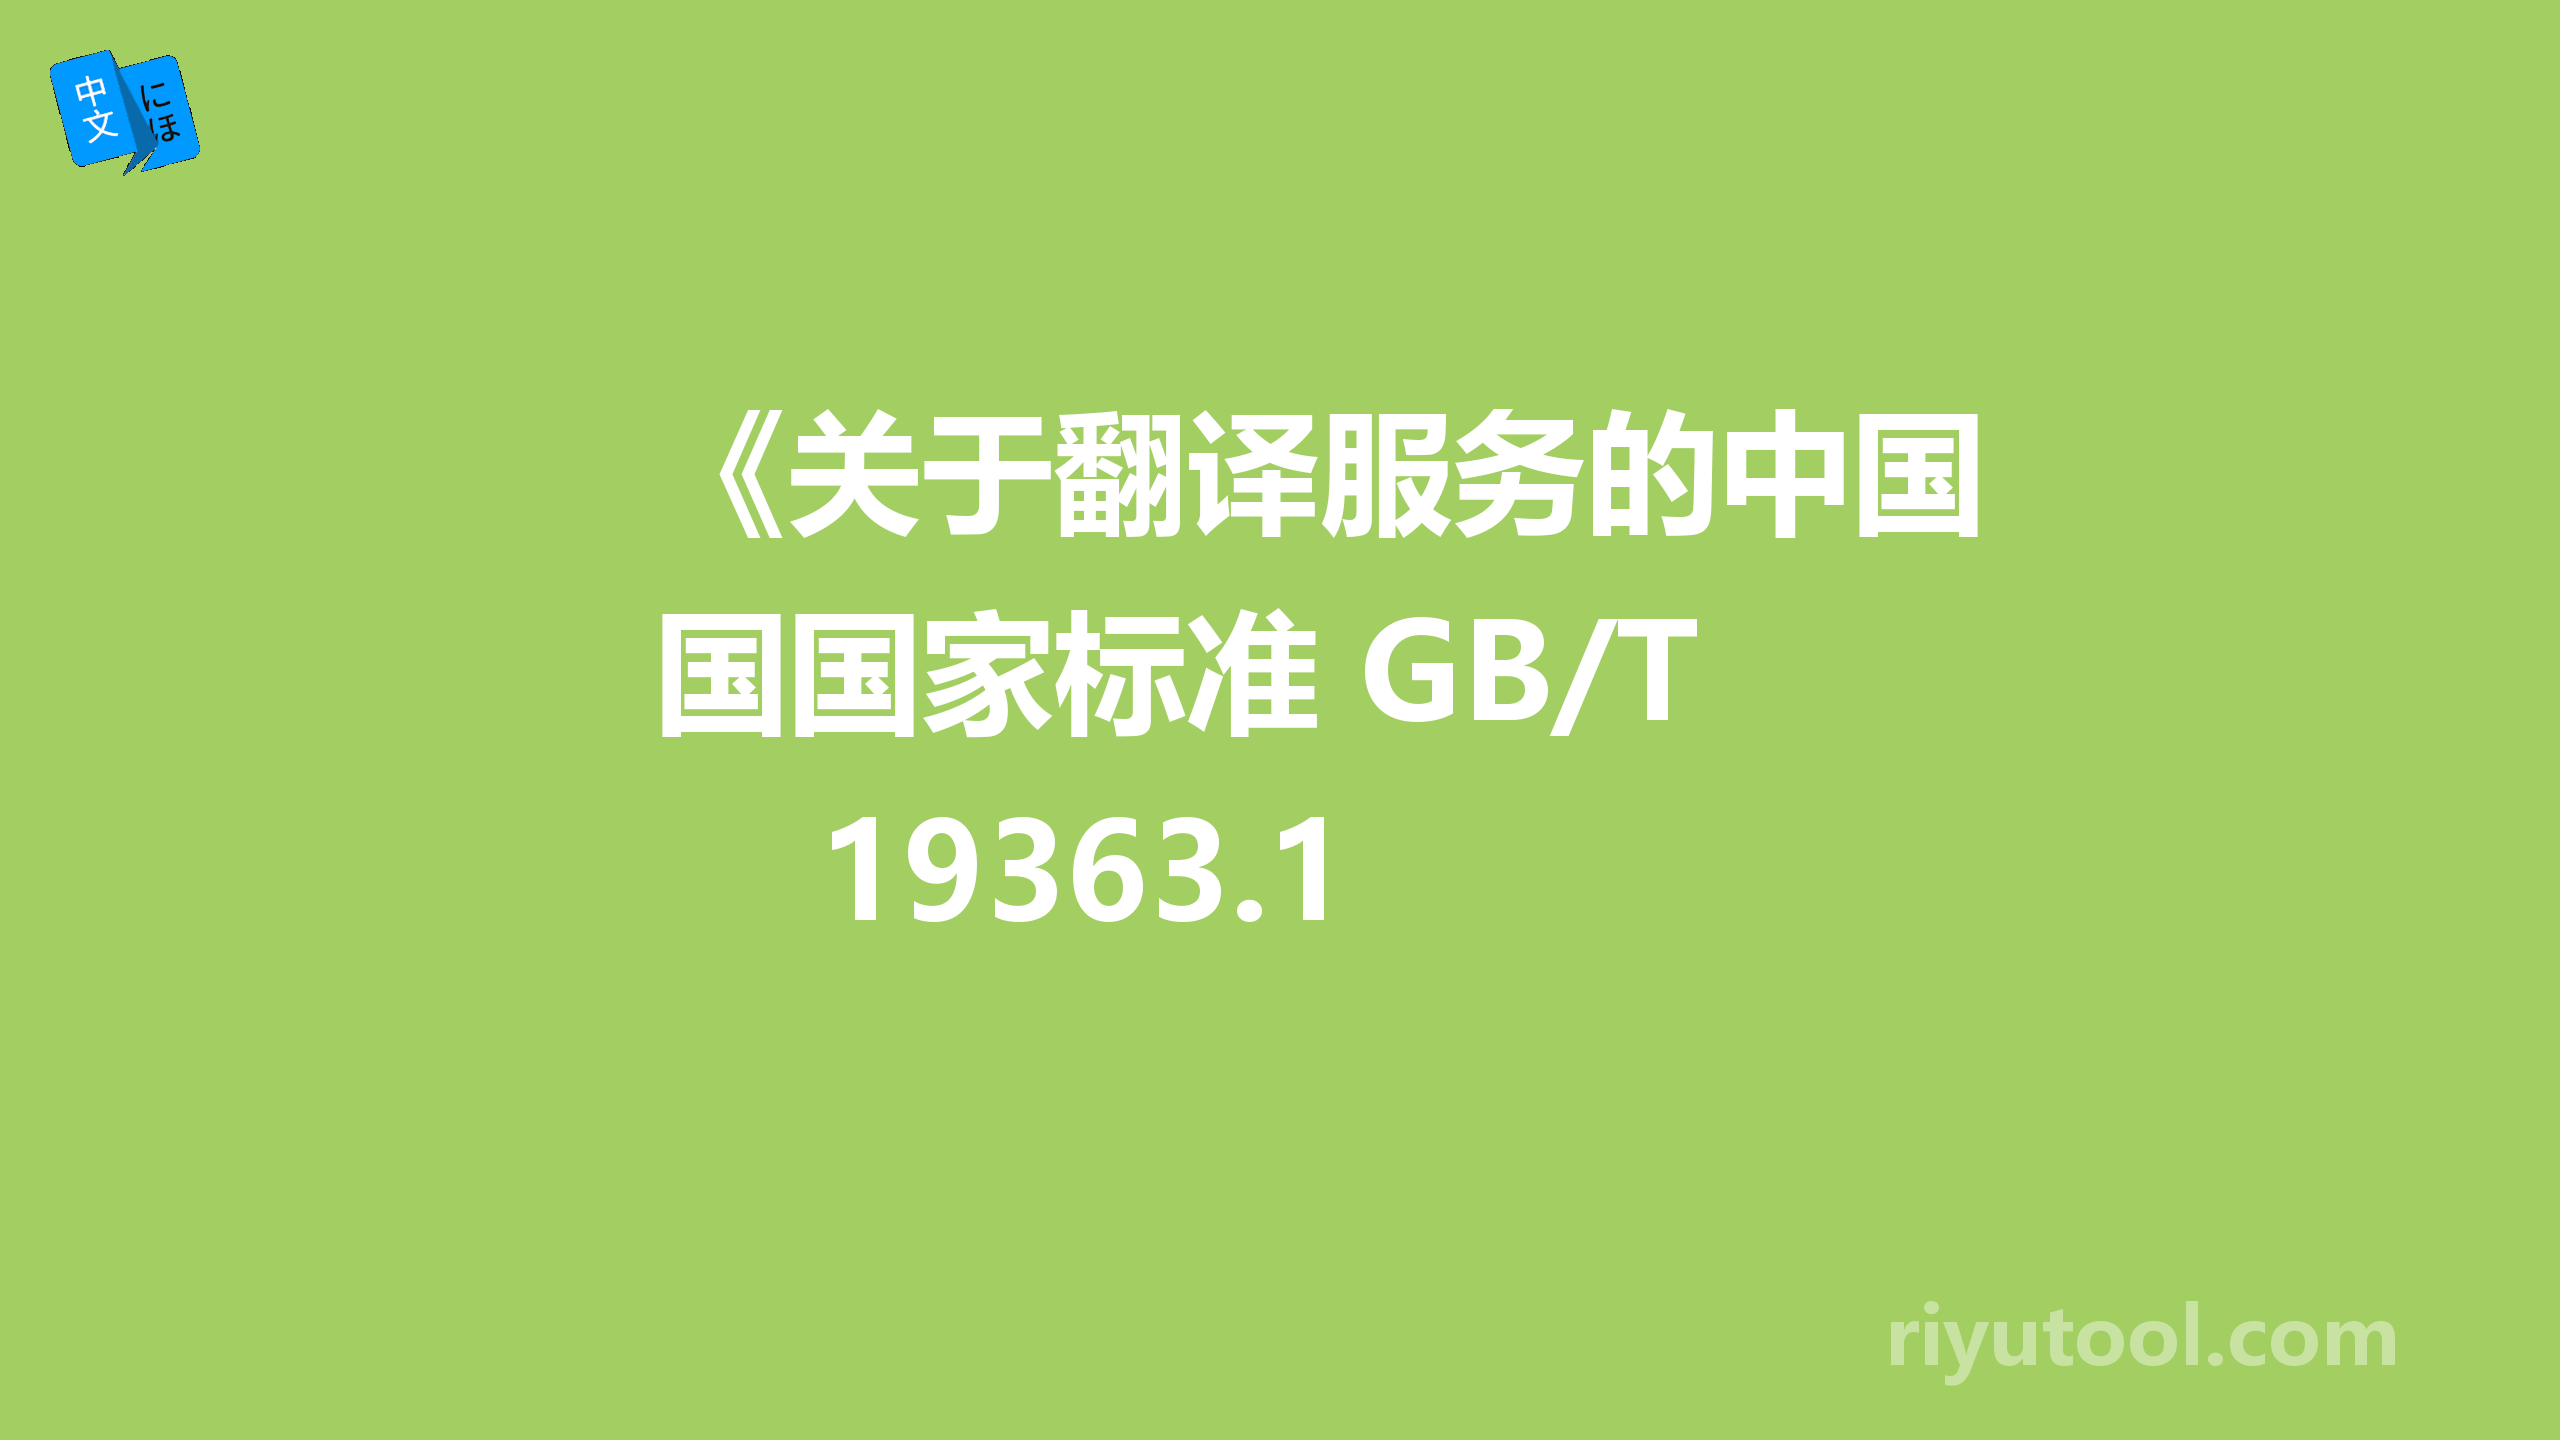 《关于翻译服务的中国国家标准 GB/T 19363.1